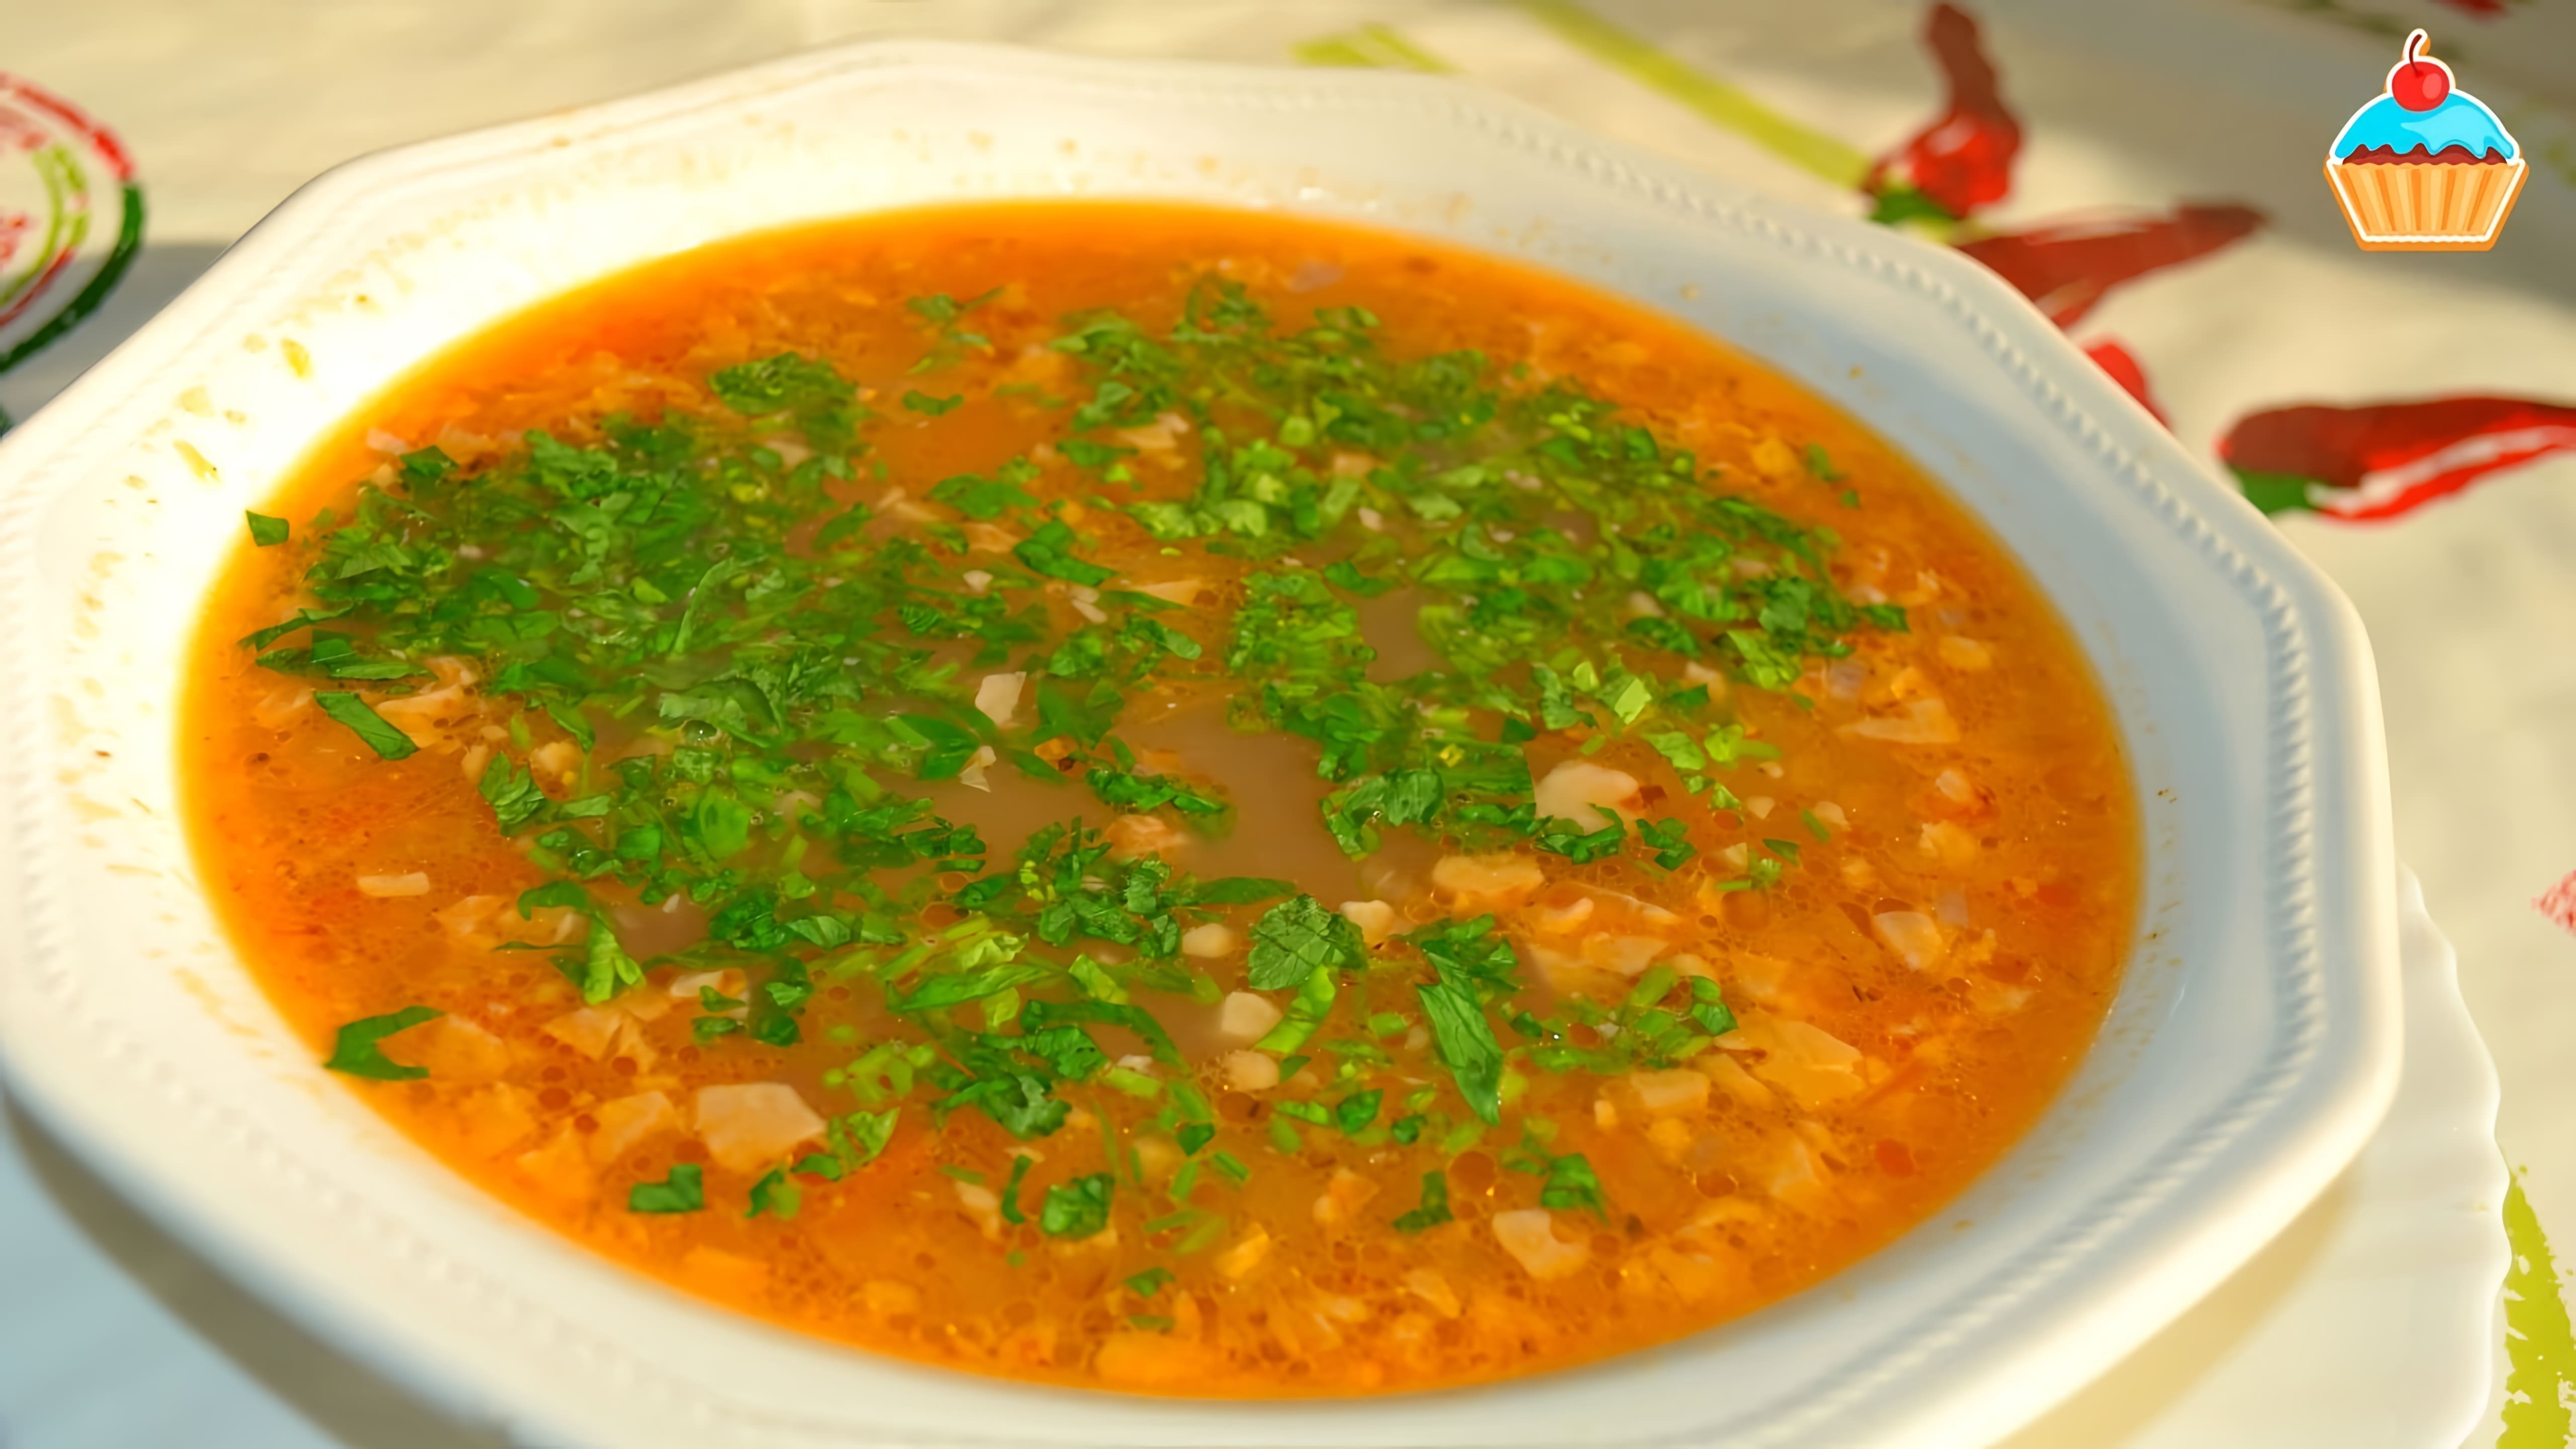 В этом видео демонстрируется процесс приготовления грузинского супа харчо по авторскому рецепту